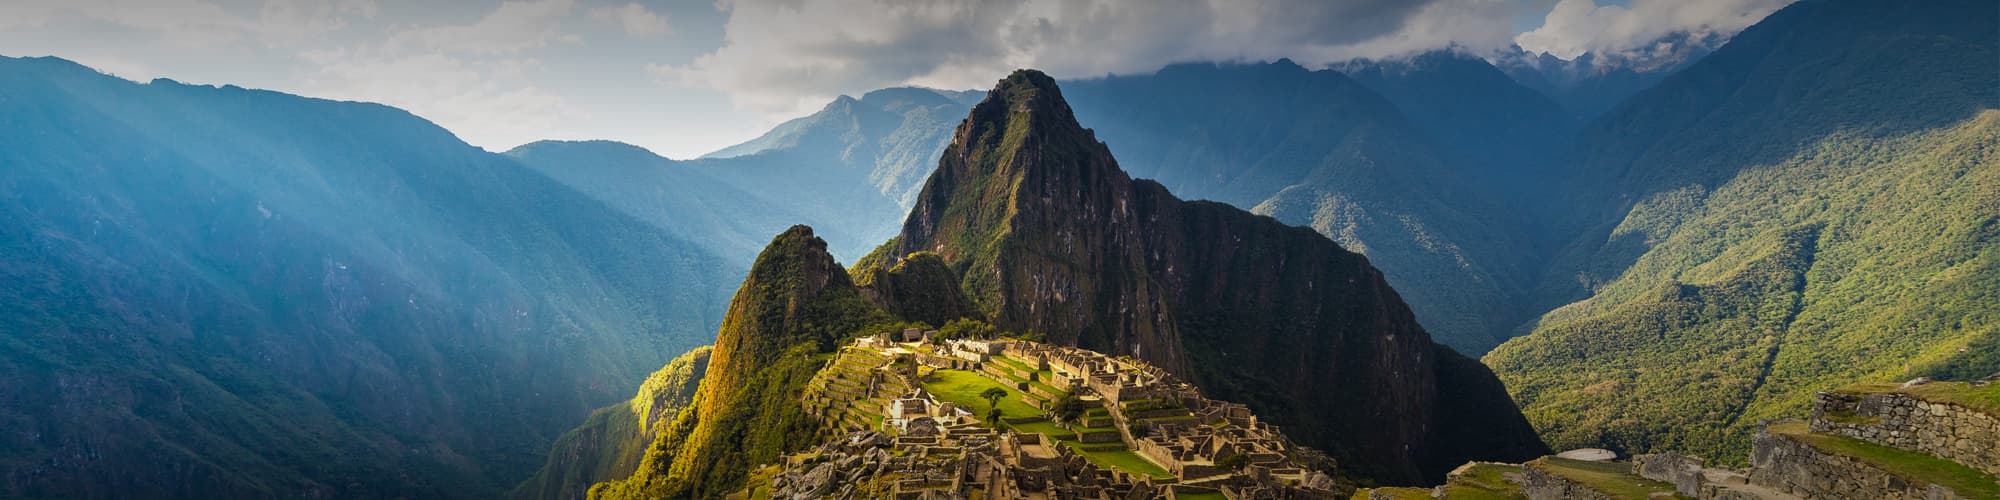 Voyage sur mesure Pérou © fbxx